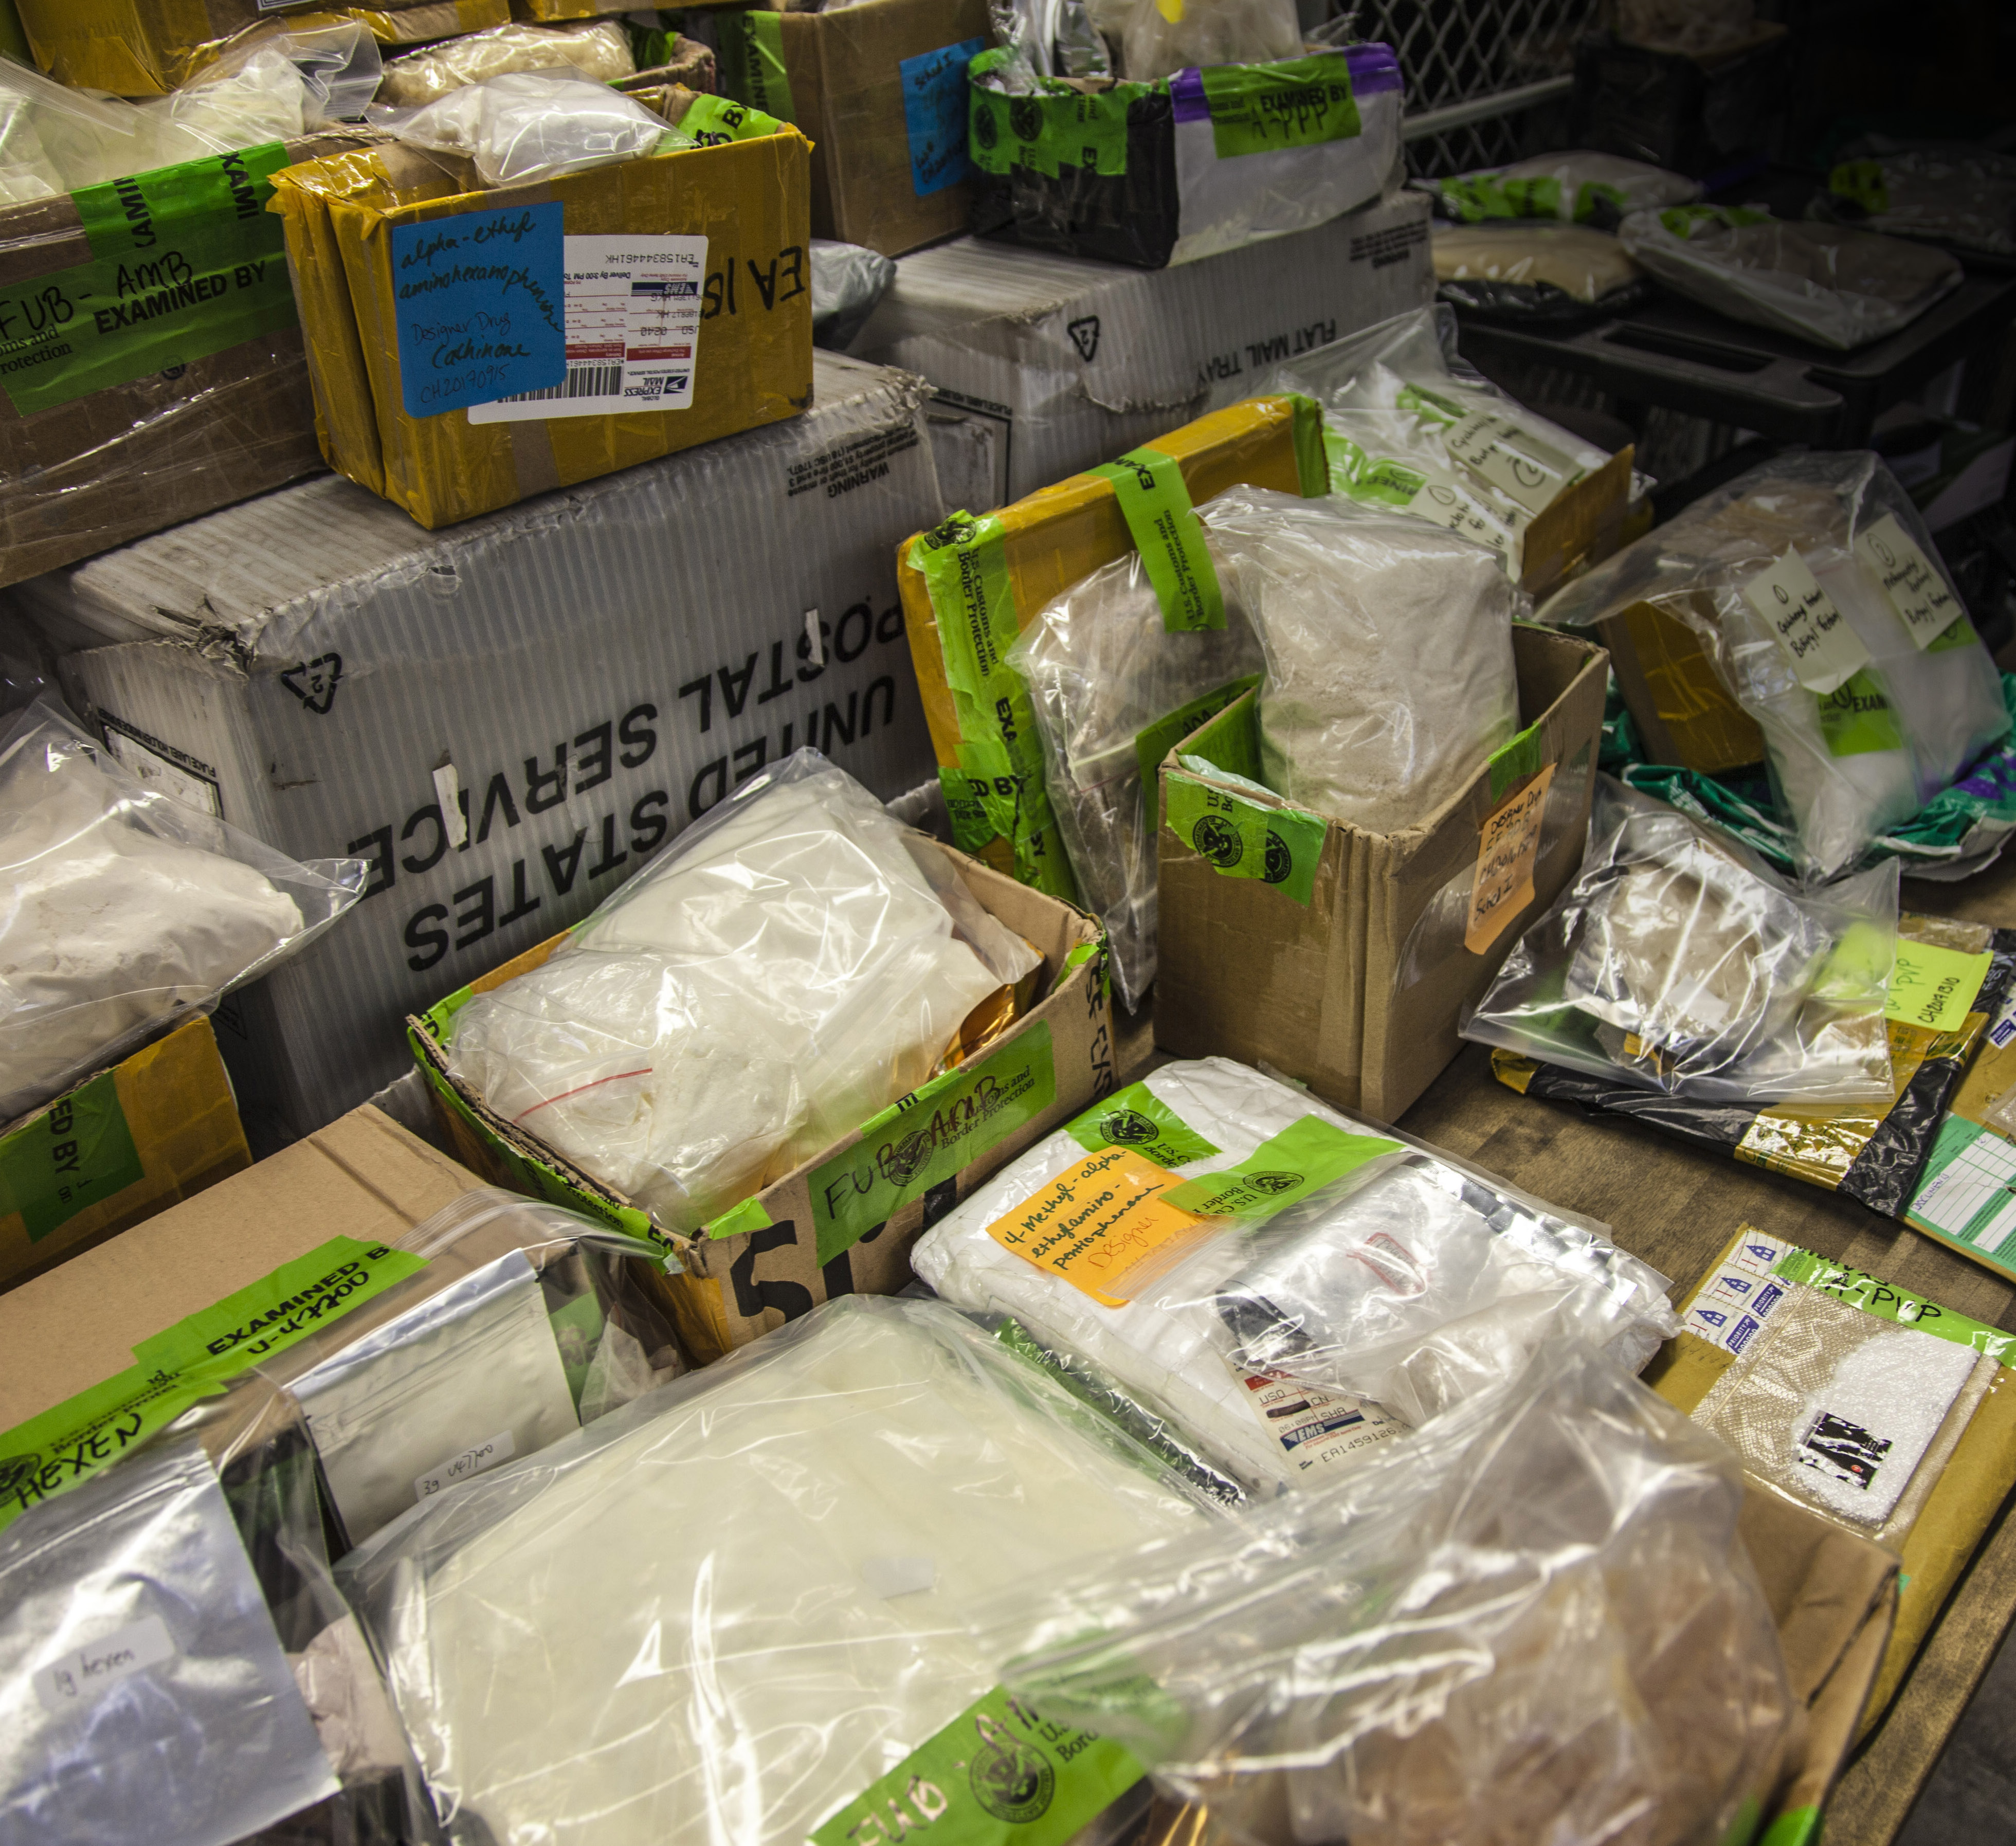 Synthetic marijuana: A very real contraband hazard